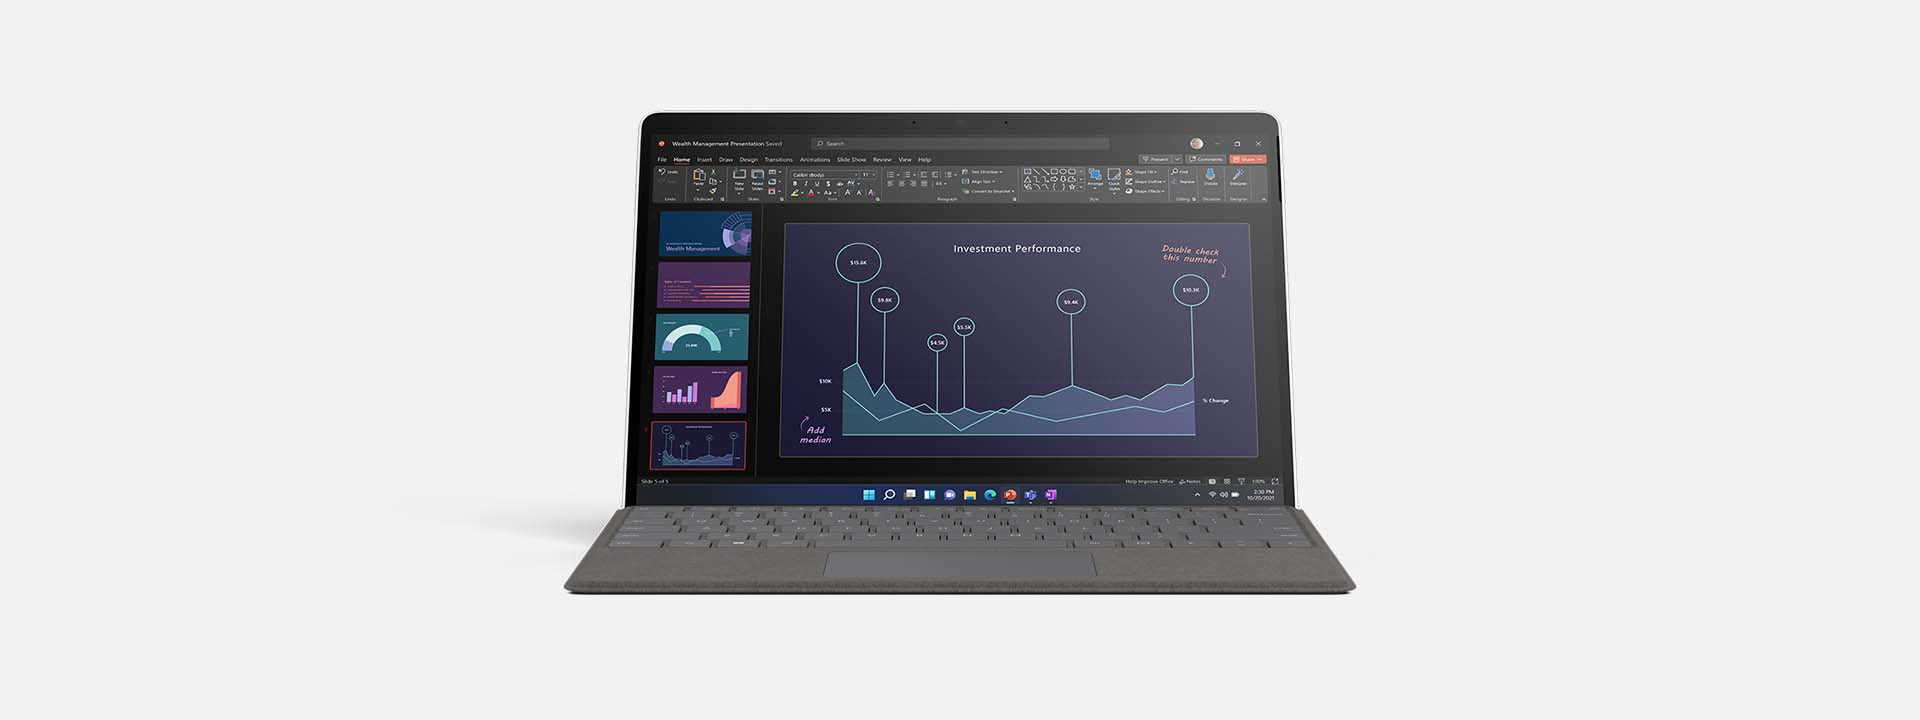 عرض جهاز Surface Pro X في وضع الكمبيوتر المحمول